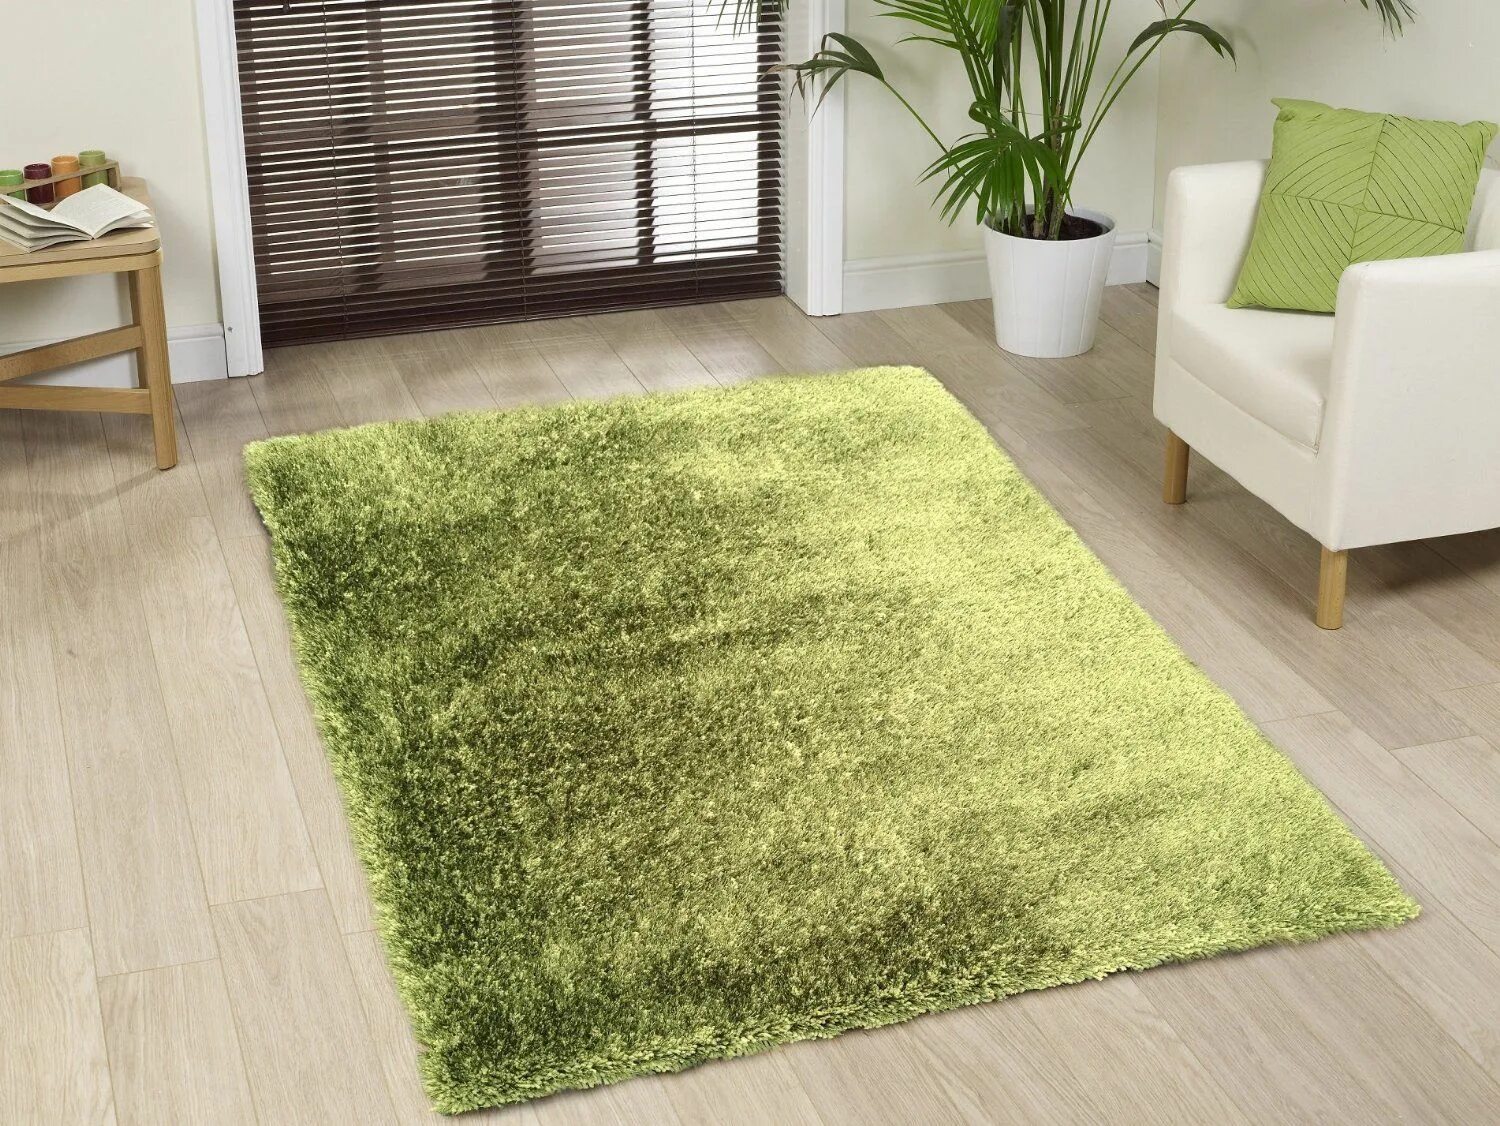 Ковер 2*2,9 Luxury 2011 Green. Ковер Грин Блю д578. Modern Carpet ковер Шагги. Зеленый ковер в интерьере. Купить коврик зеленый